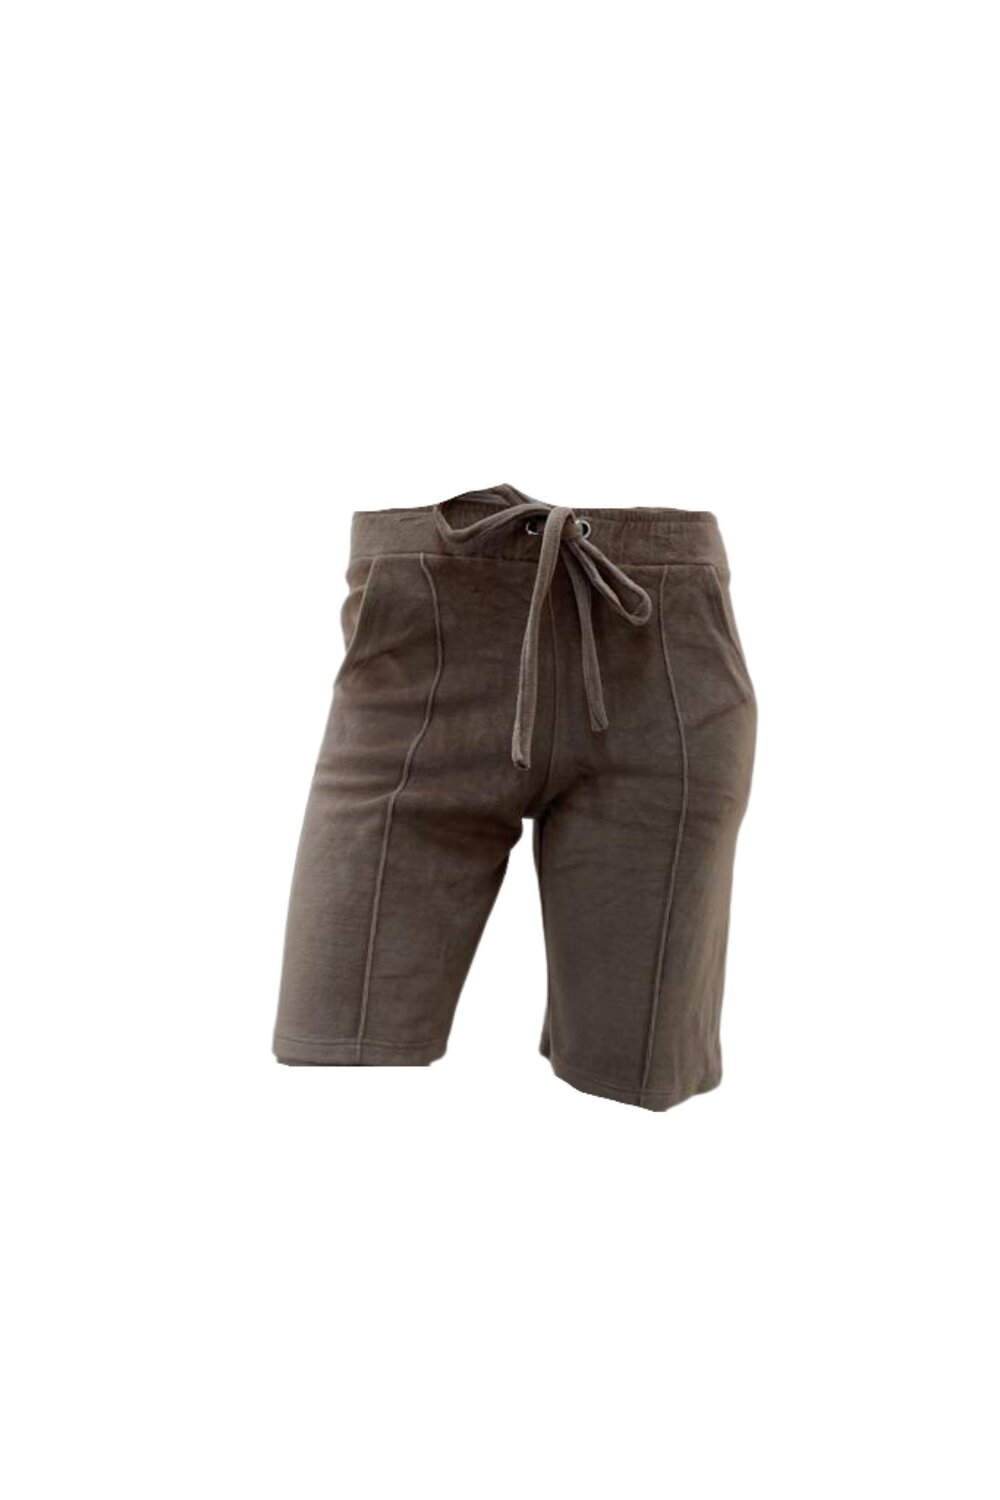 Pantaloni Scurti de Dama, din Catifea, Cappucino image0